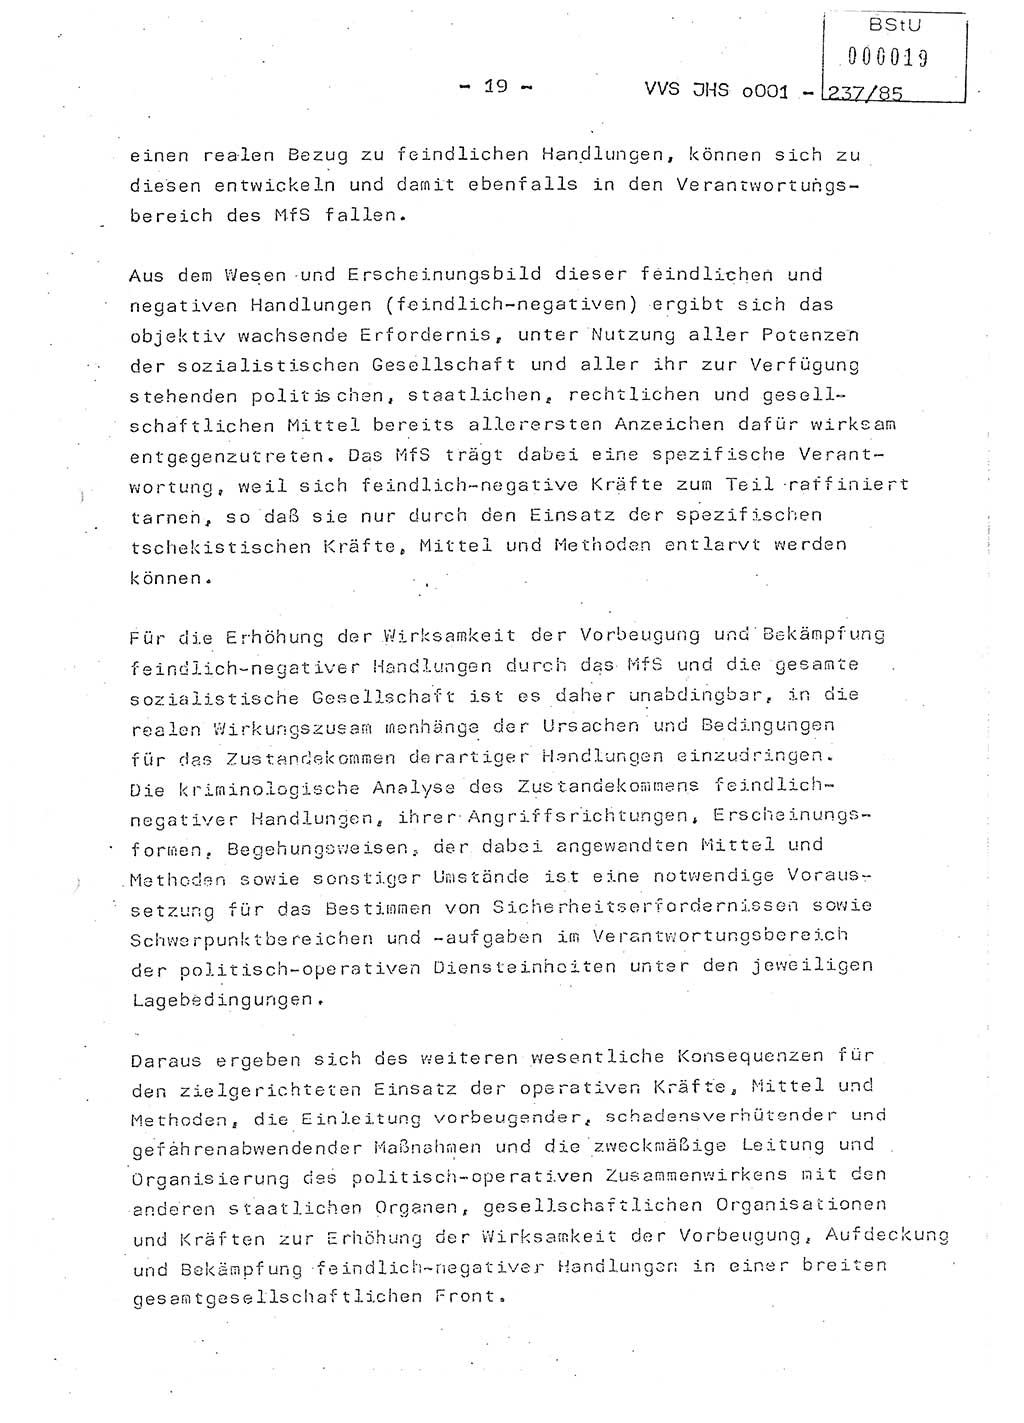 Dissertation Oberstleutnant Peter Jakulski (JHS), Oberstleutnat Christian Rudolph (HA Ⅸ), Major Horst Böttger (ZMD), Major Wolfgang Grüneberg (JHS), Major Albert Meutsch (JHS), Ministerium für Staatssicherheit (MfS) [Deutsche Demokratische Republik (DDR)], Juristische Hochschule (JHS), Vertrauliche Verschlußsache (VVS) o001-237/85, Potsdam 1985, Seite 19 (Diss. MfS DDR JHS VVS o001-237/85 1985, S. 19)